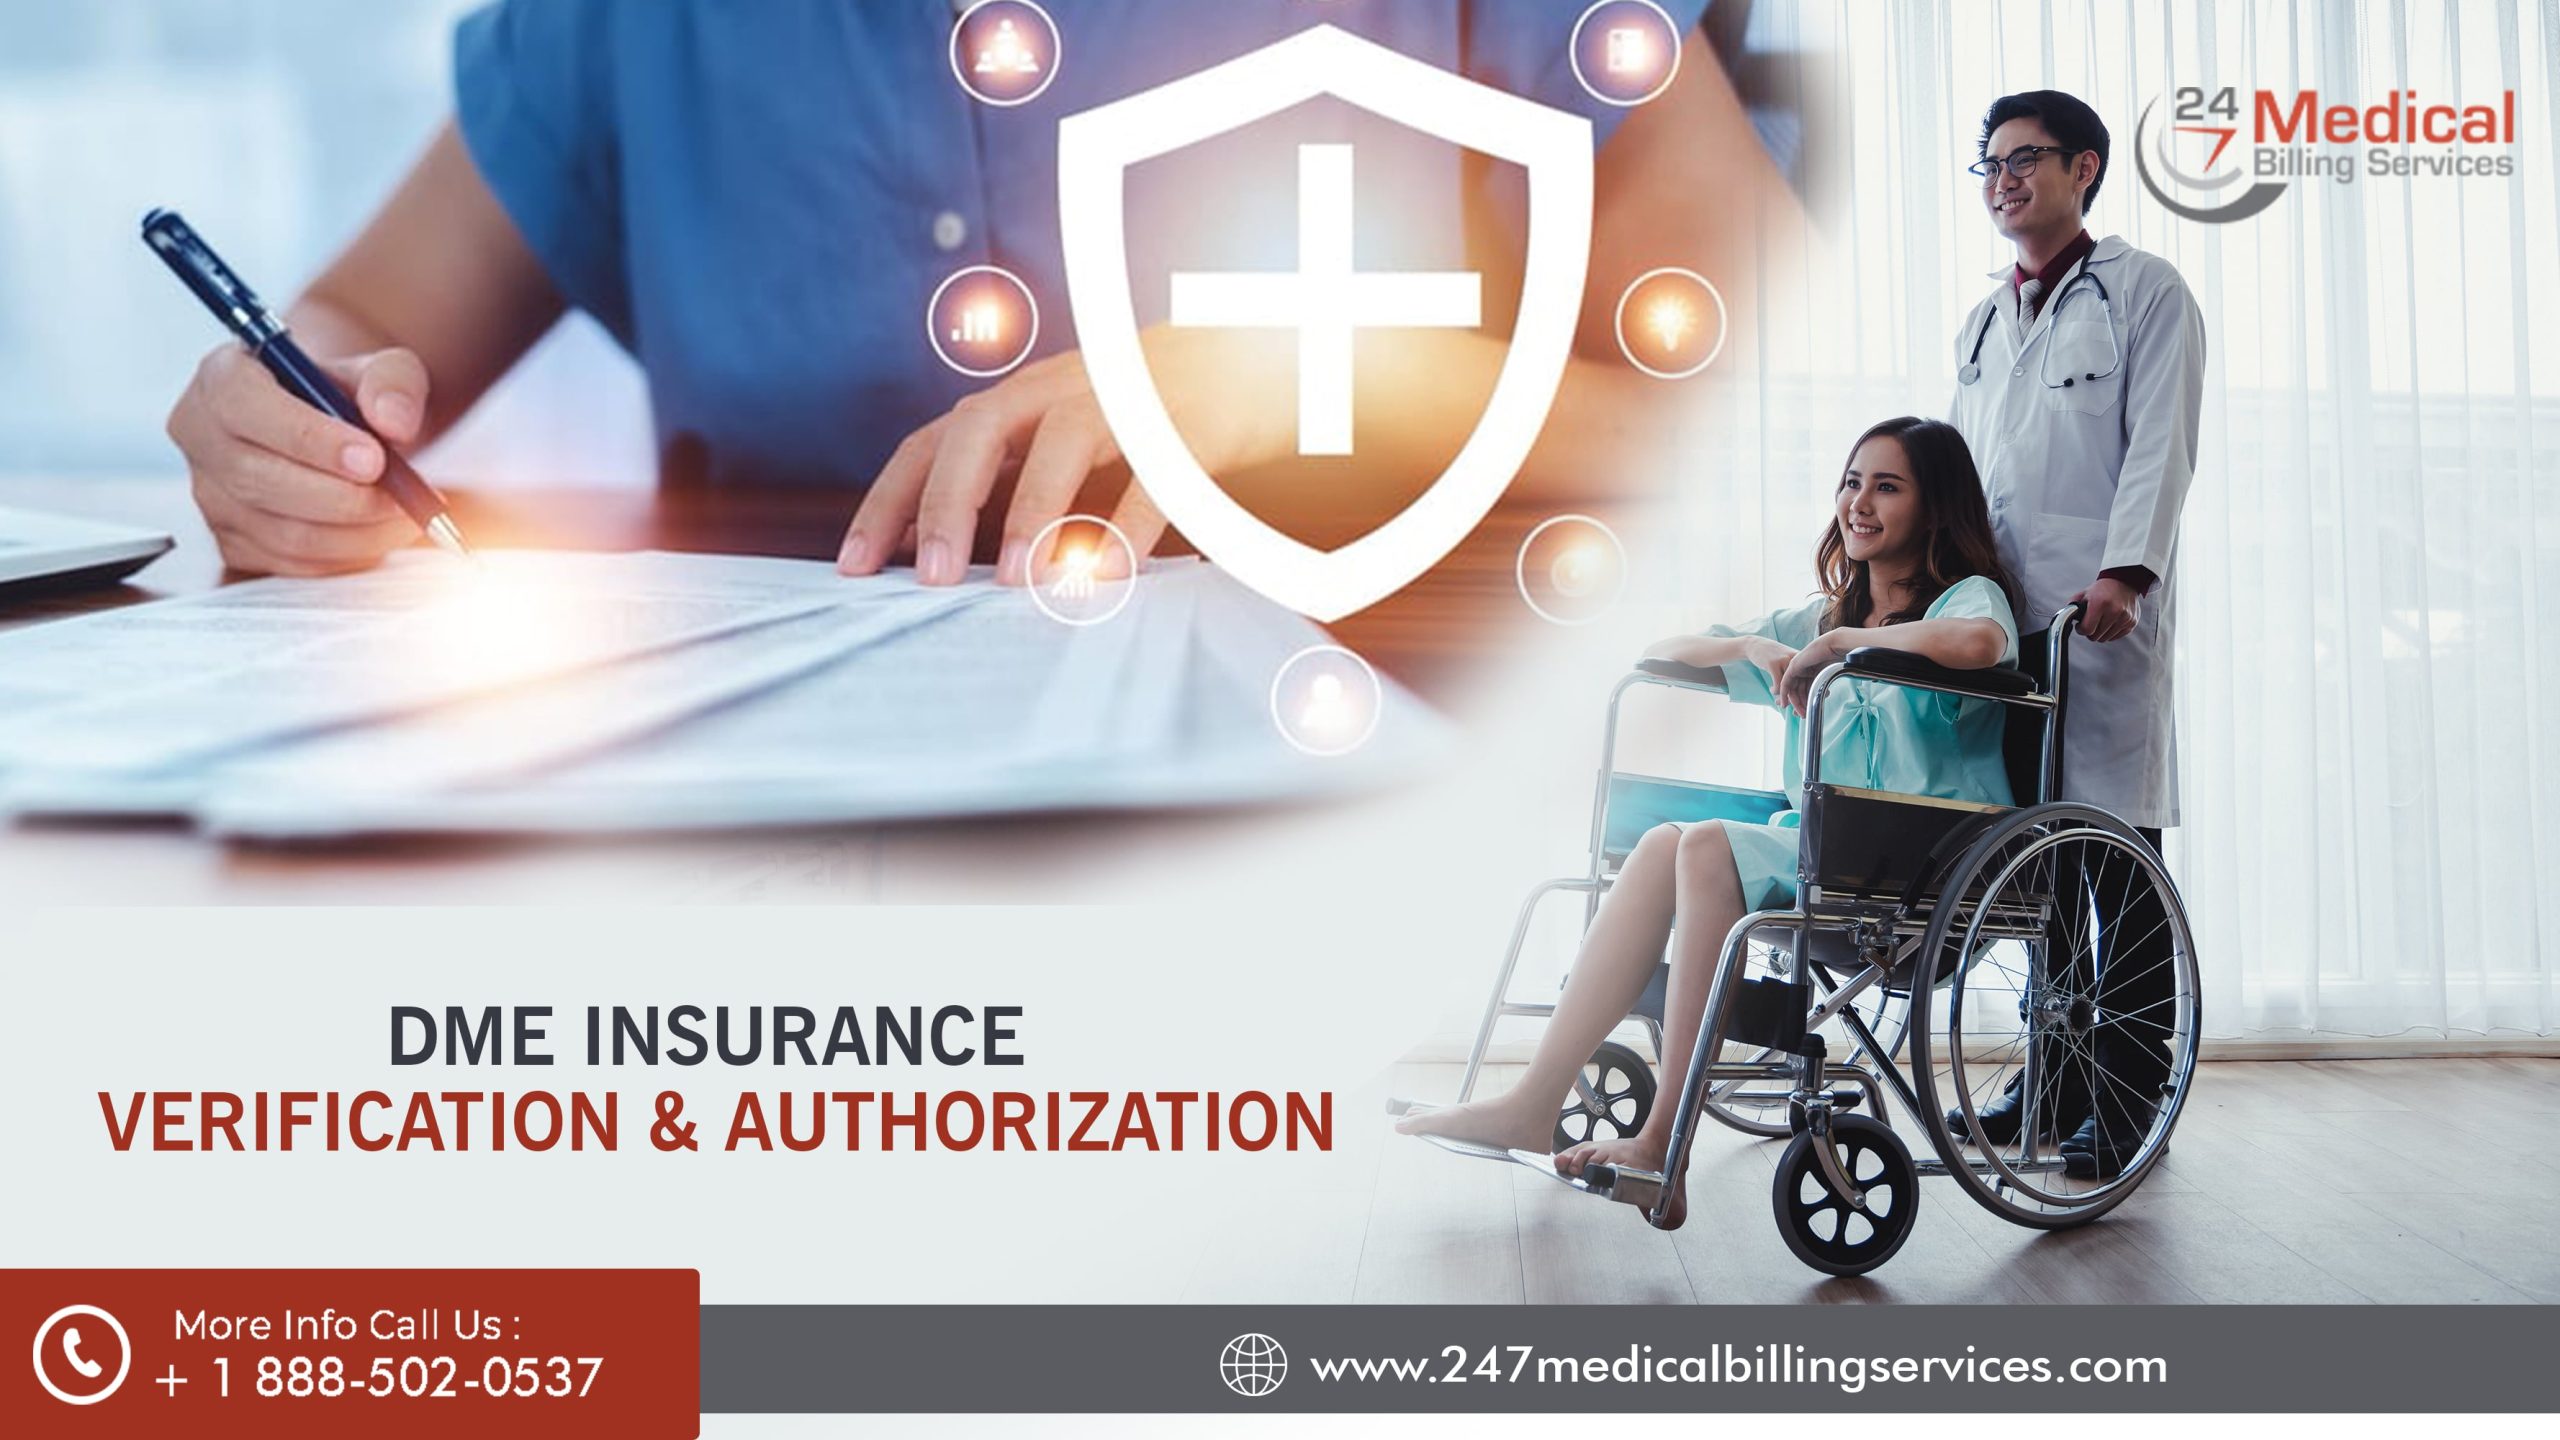  DME Insurance Verification & Authorization